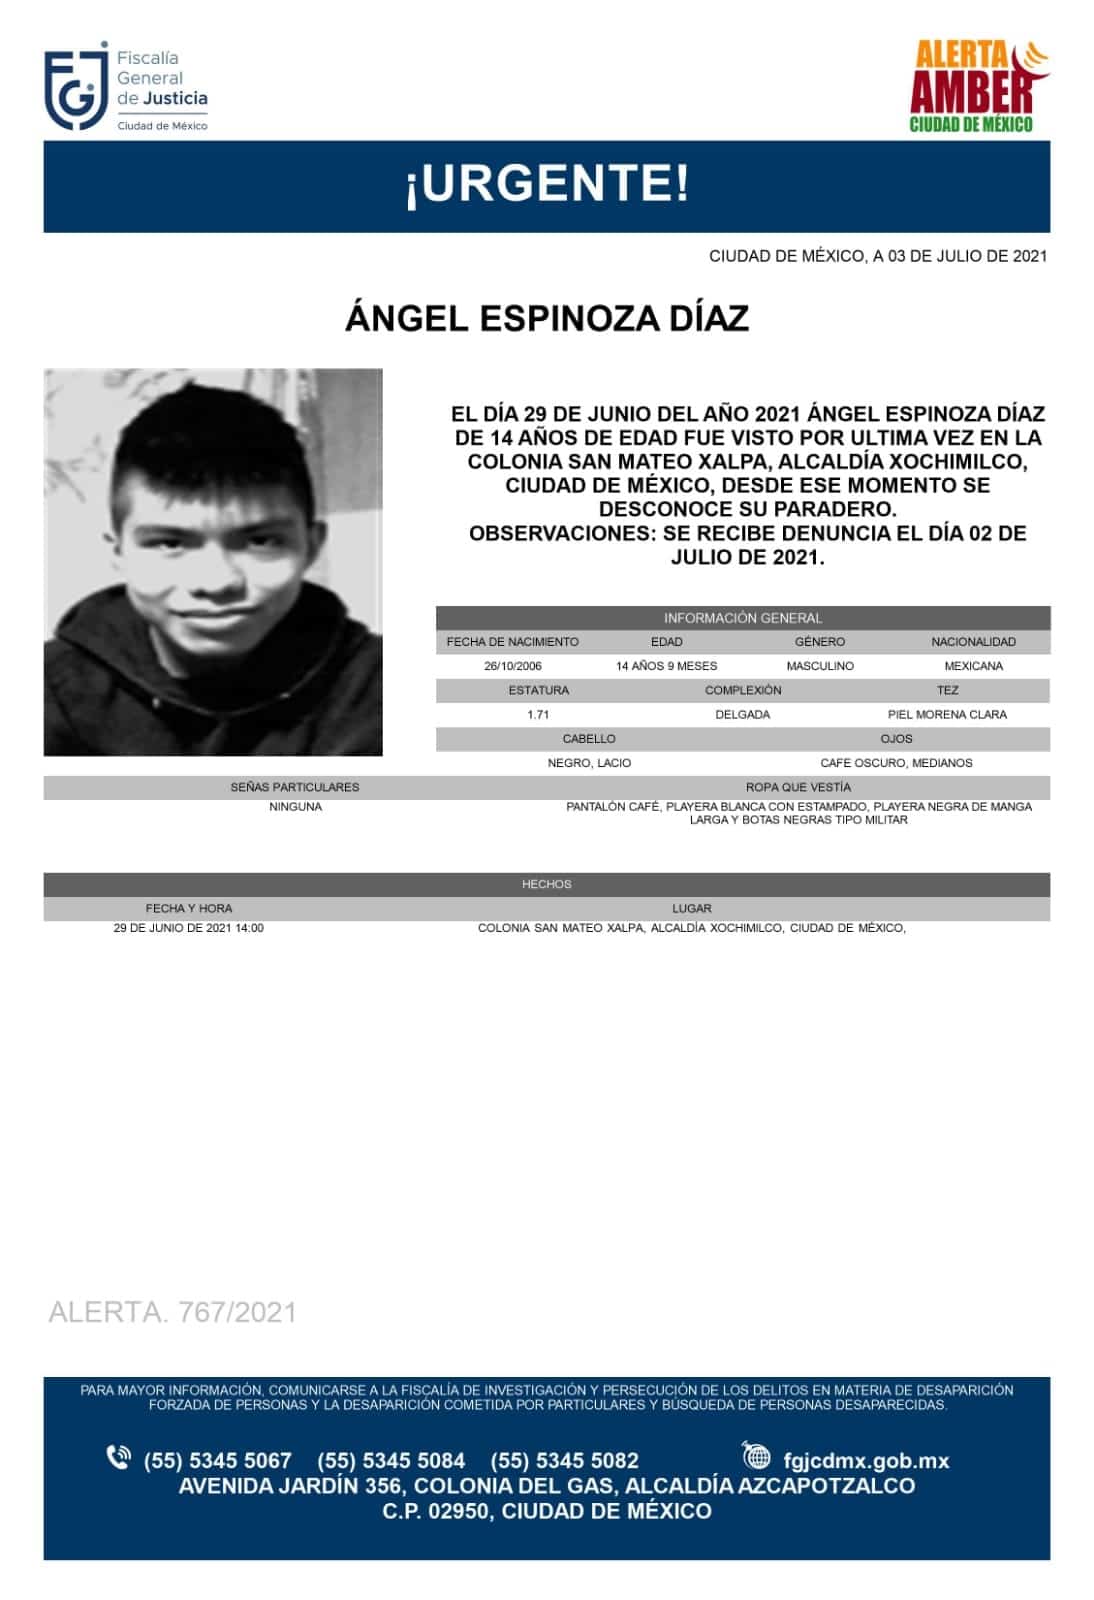 Activan Alerta Amber para localizar a Ángel Espinoza Díaz